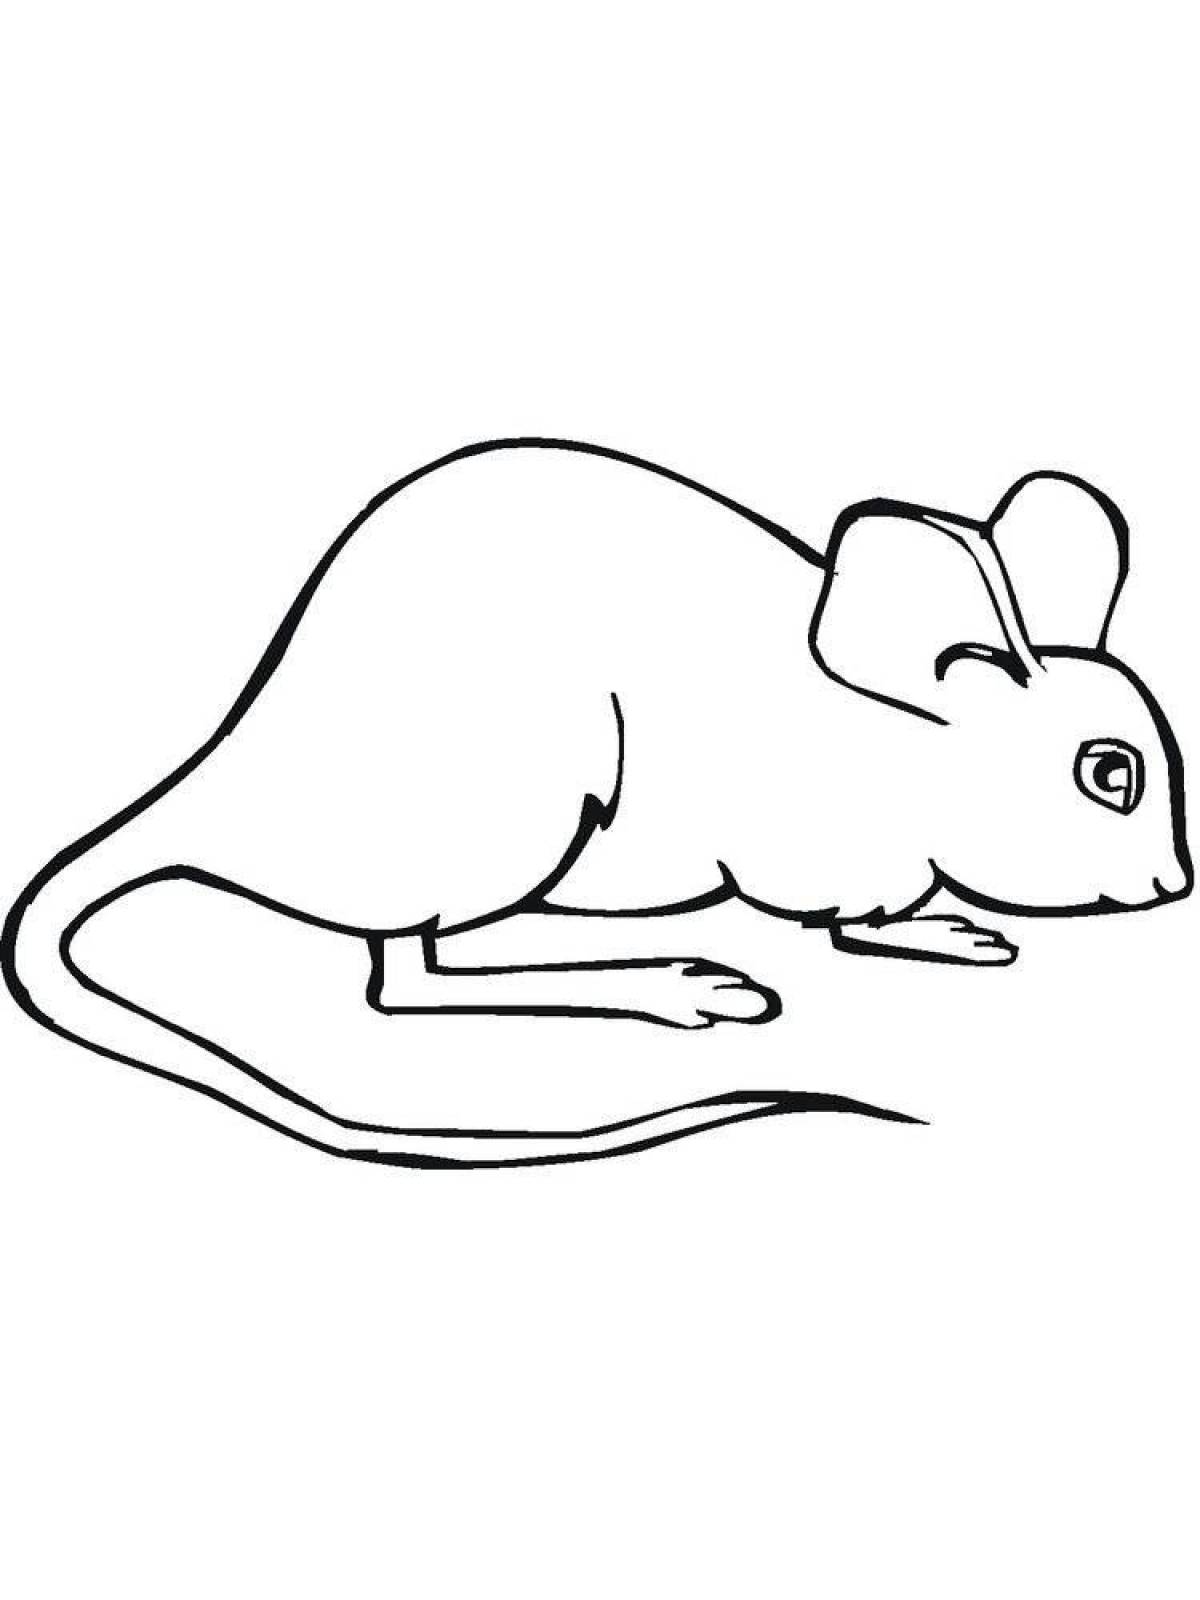 Контур мышки для детей